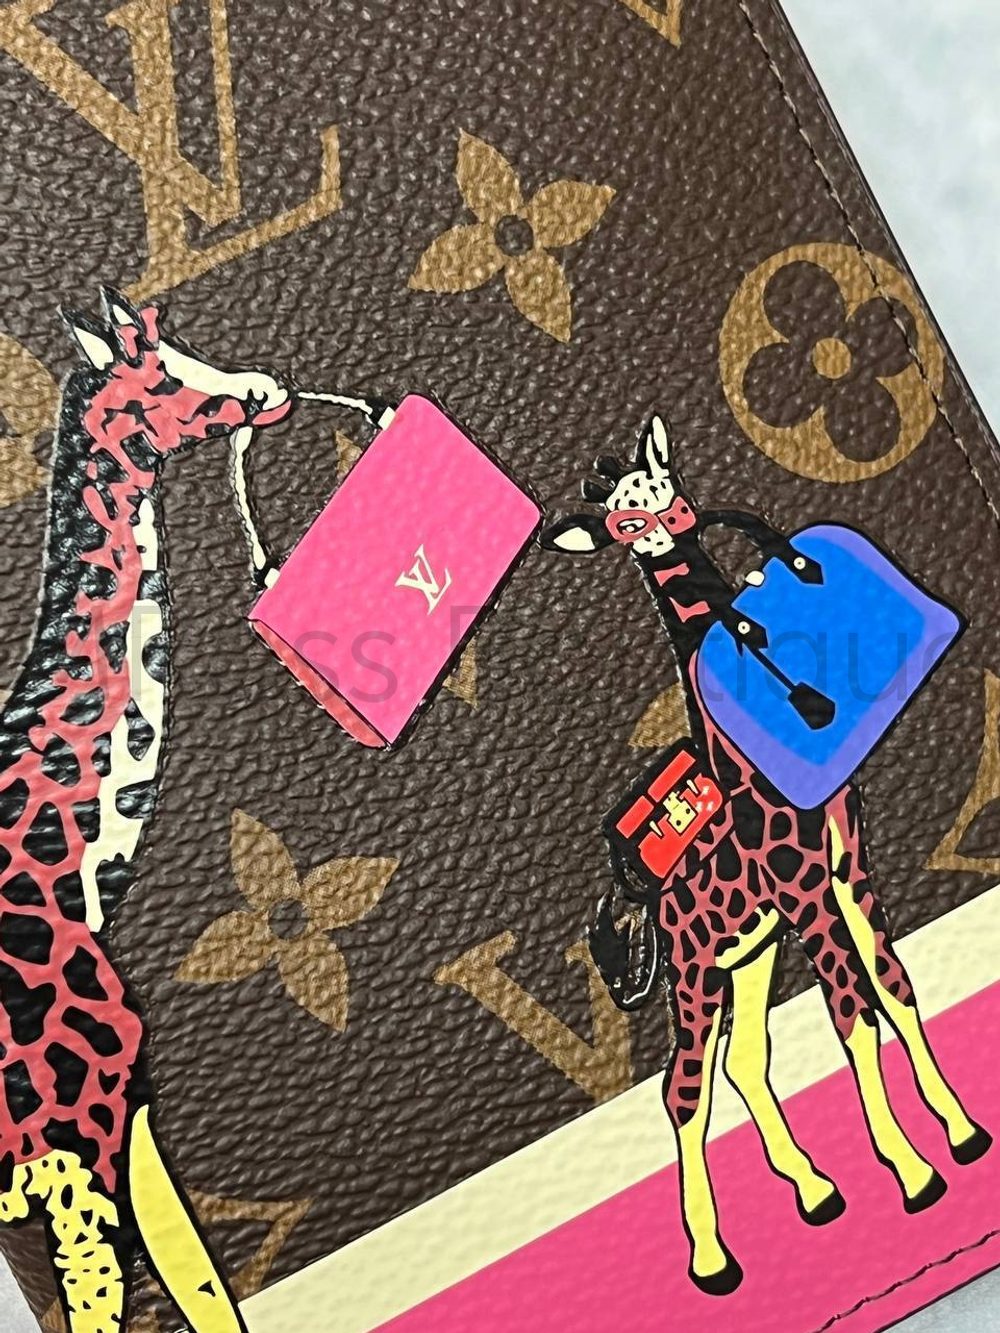 Женская обложка для паспорта Louis Vuitton с жирафами